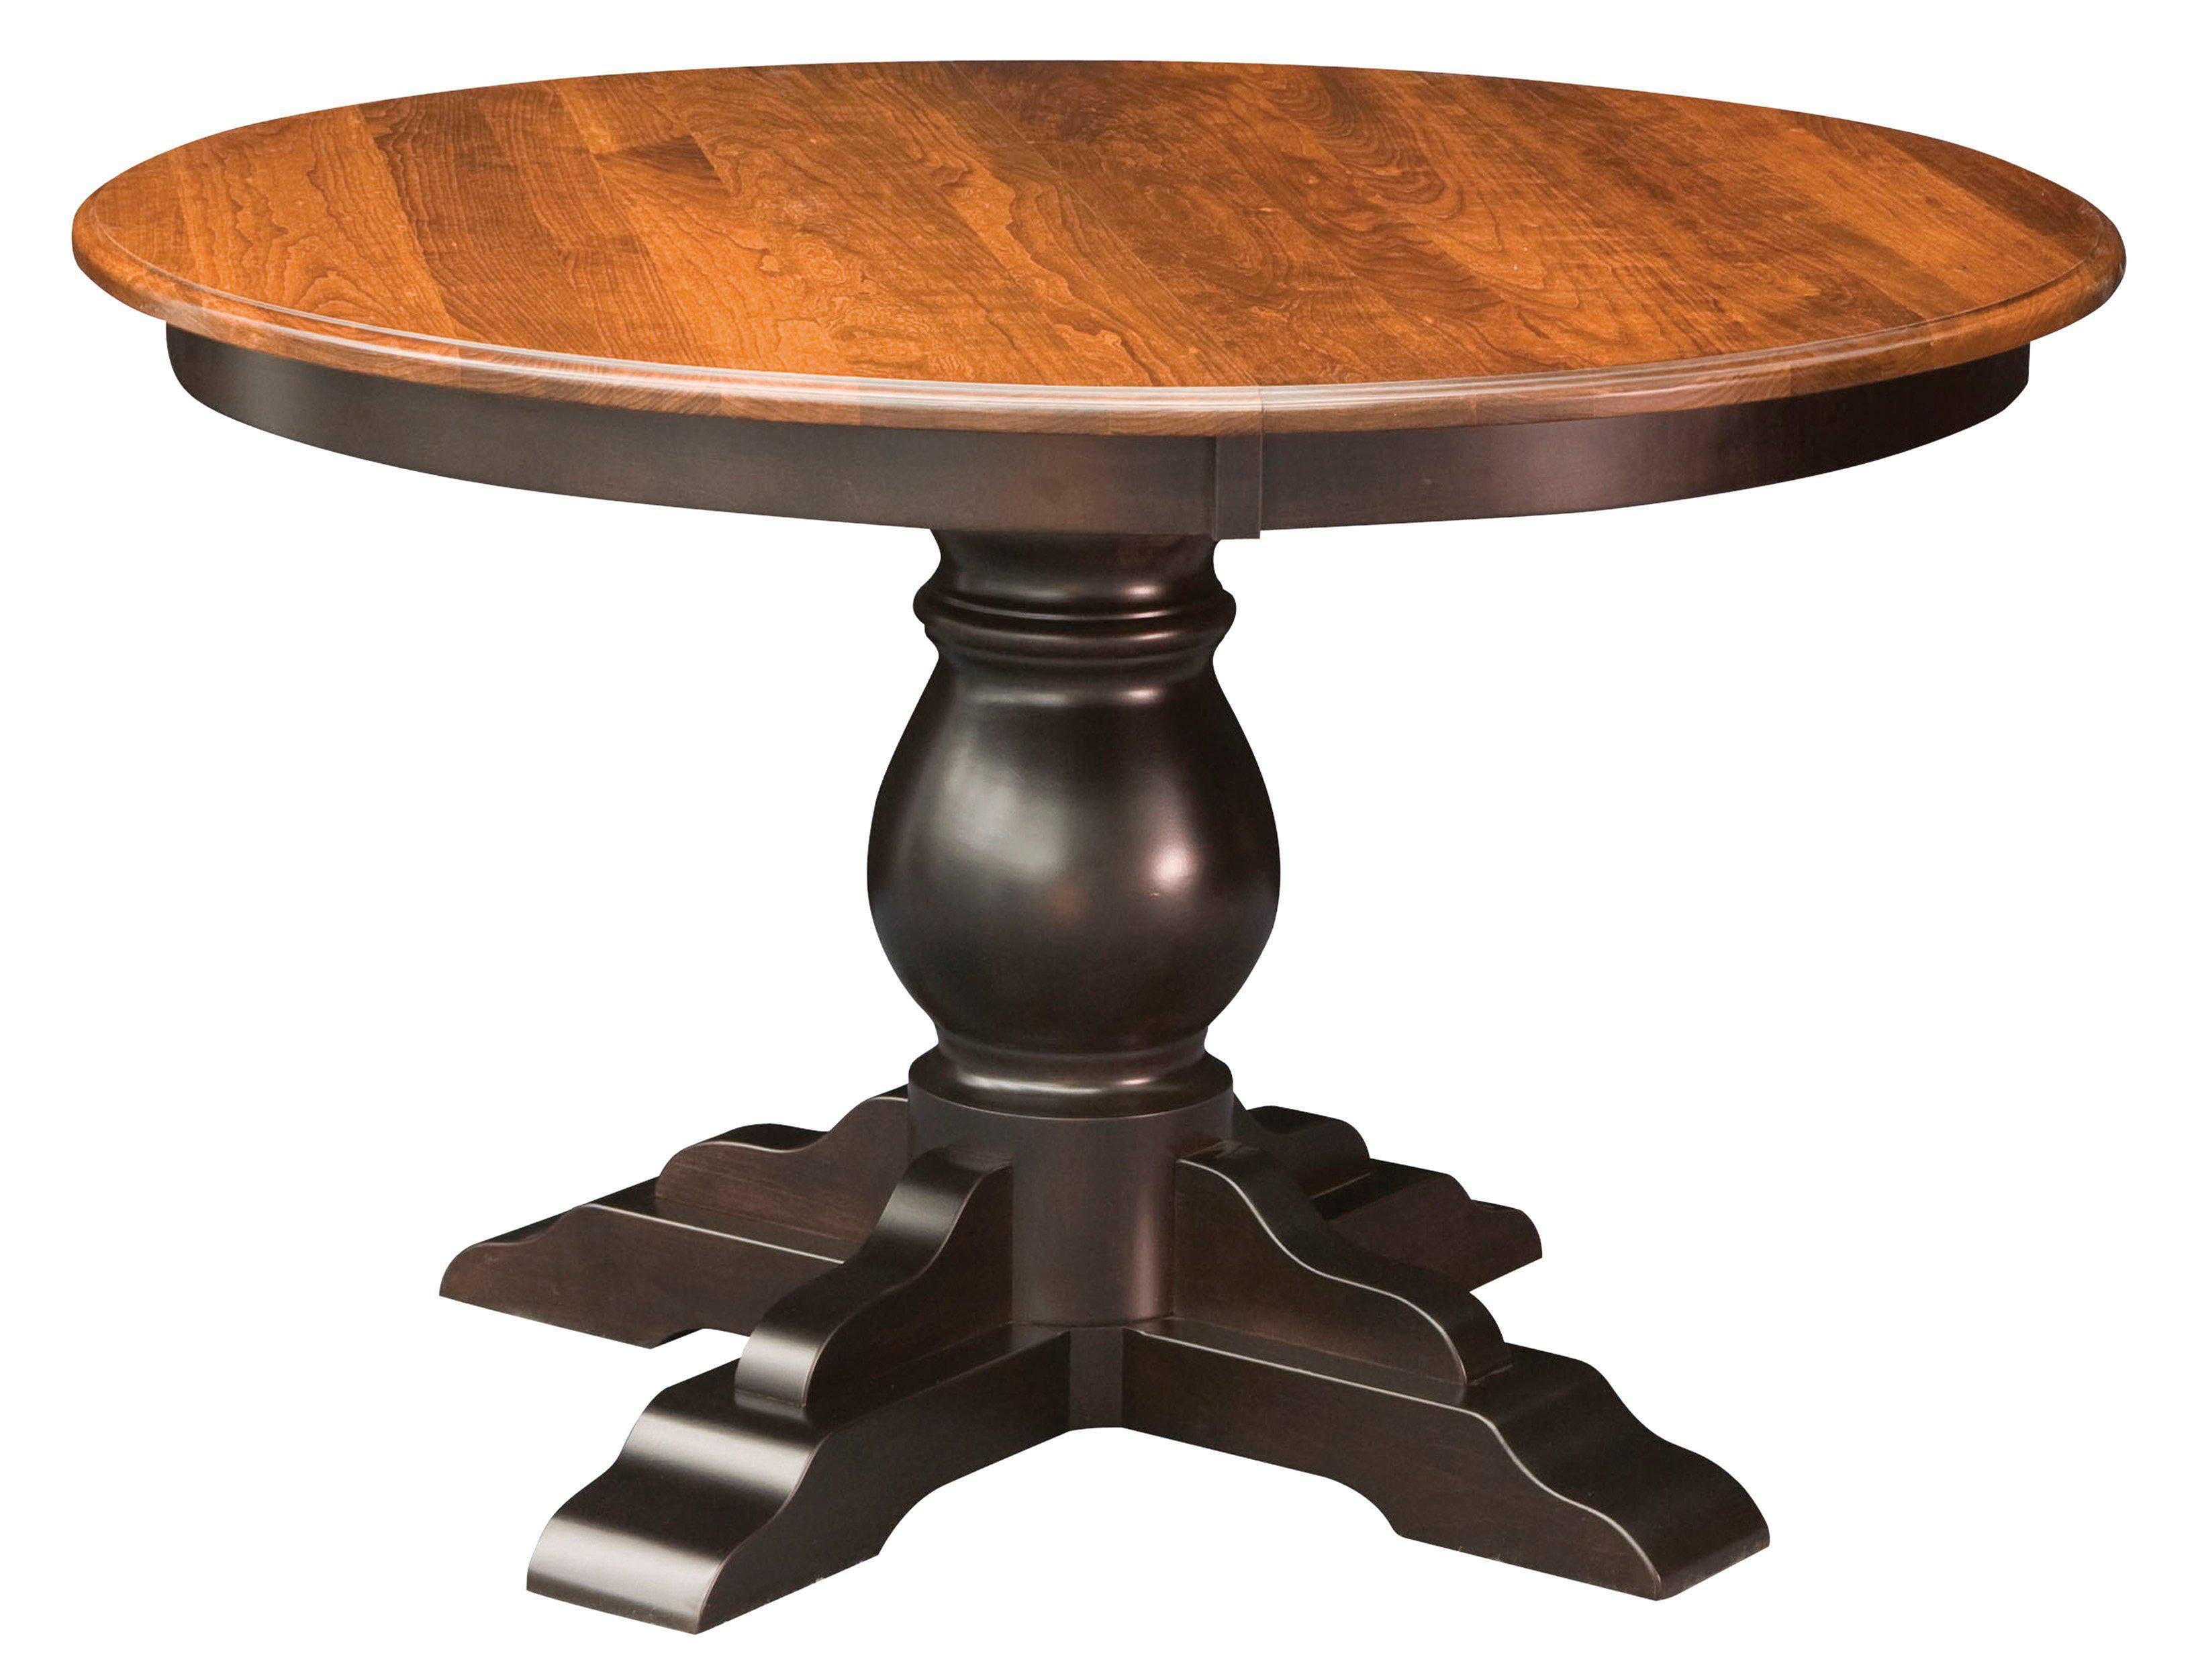 Столик из дерева круглый. Круглый деревянный столик. Столик из массива дерева круглый. Круглый обеденный стол из массива дерева. Стол круглый деревянныйэ.